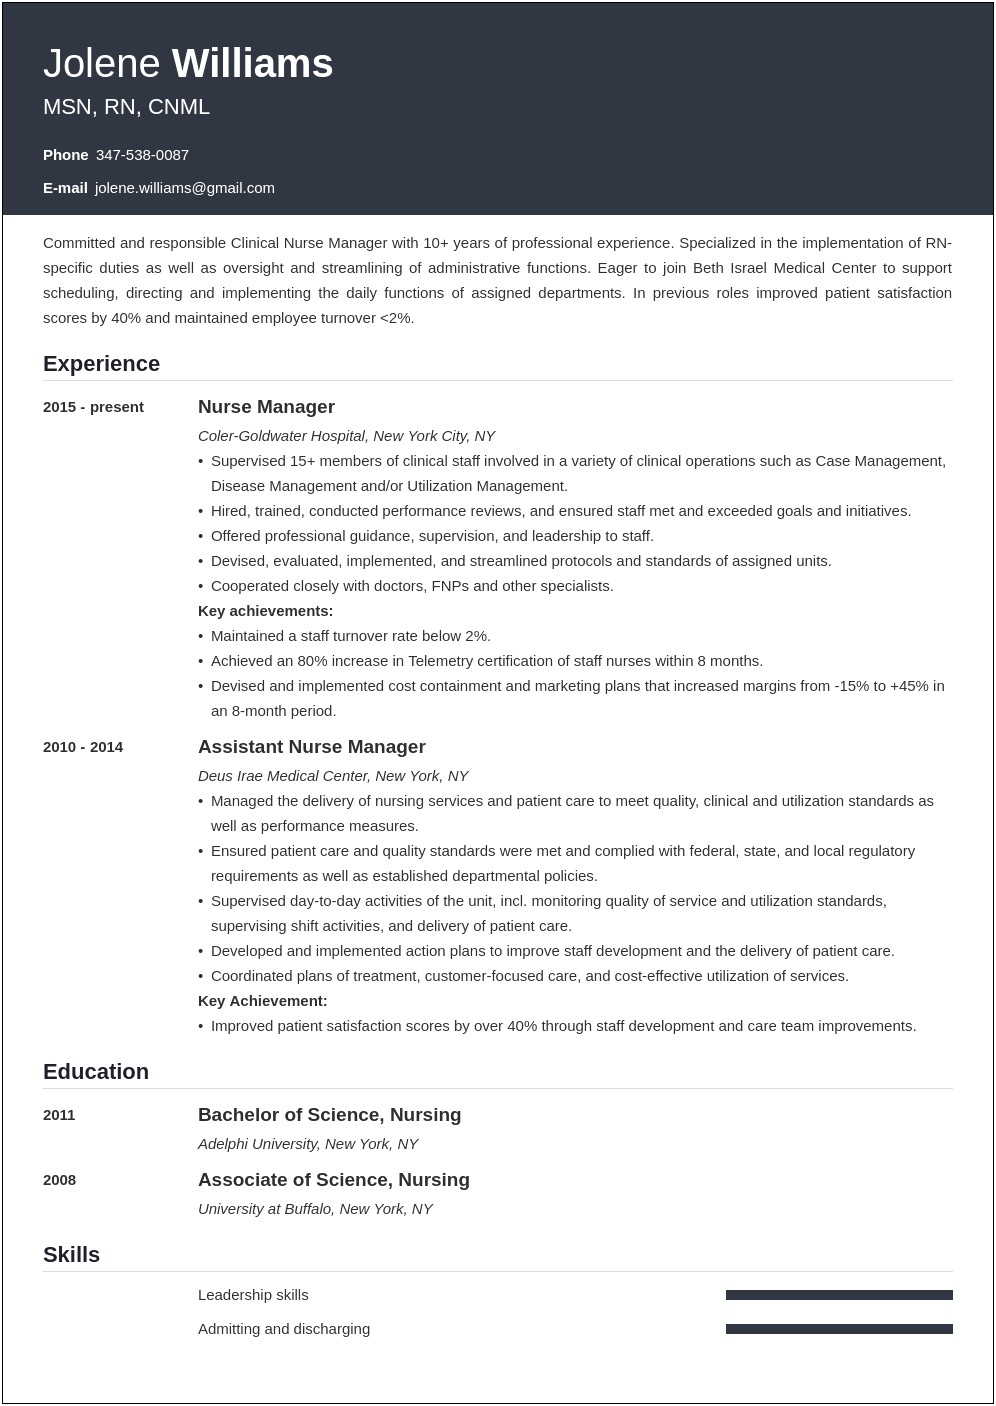 Resume Objective For Nursing Director